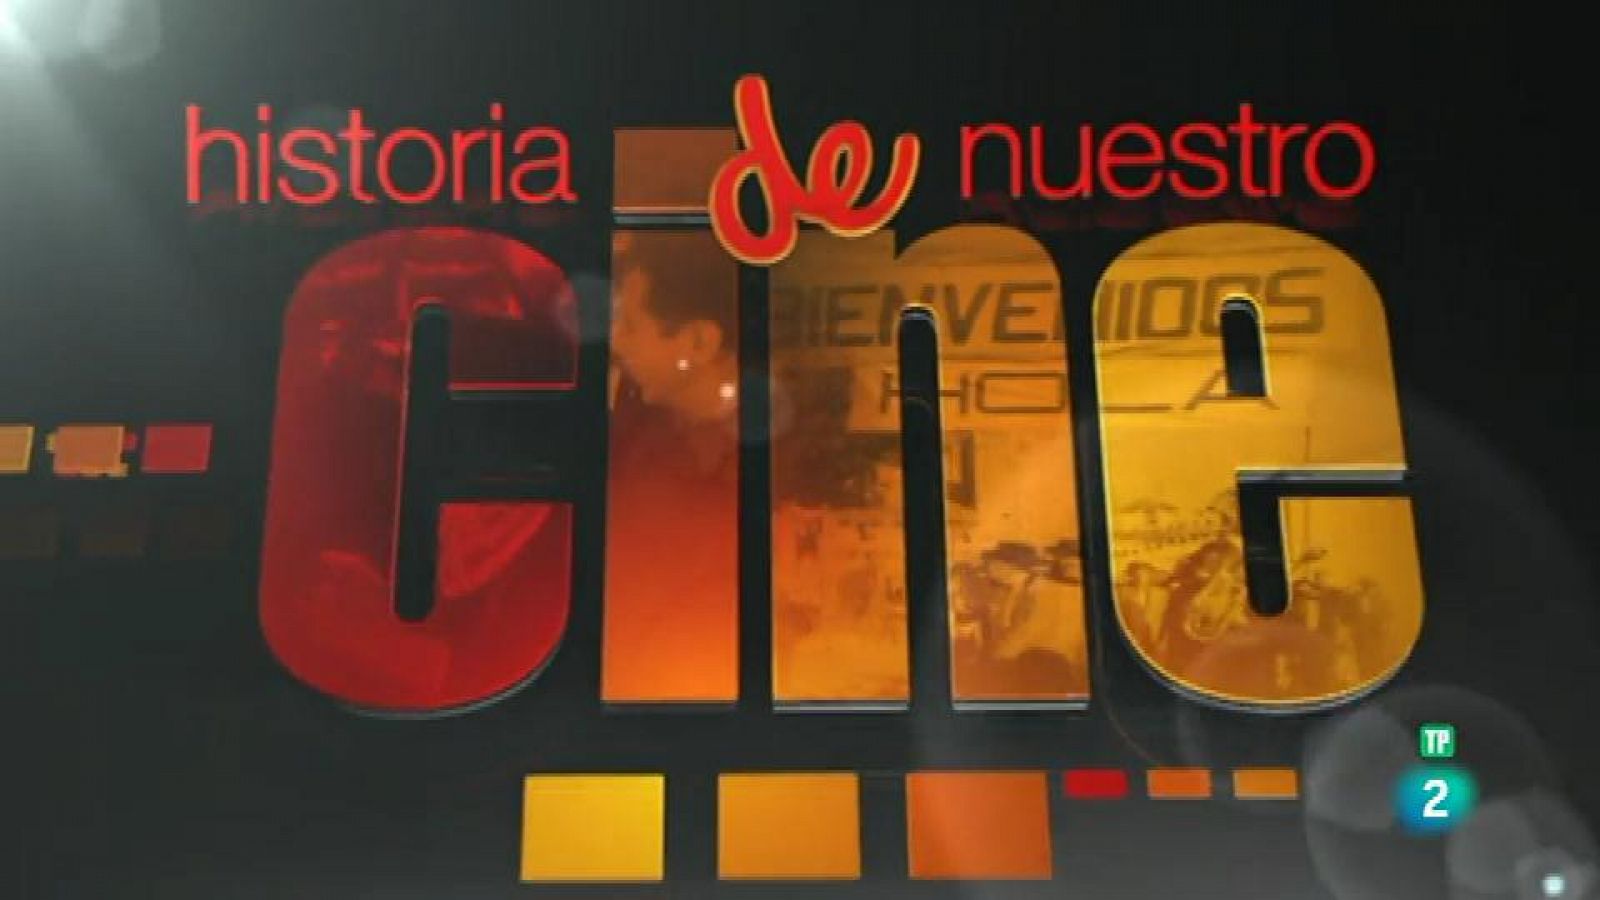 Logo "Historia de nuestro cine"